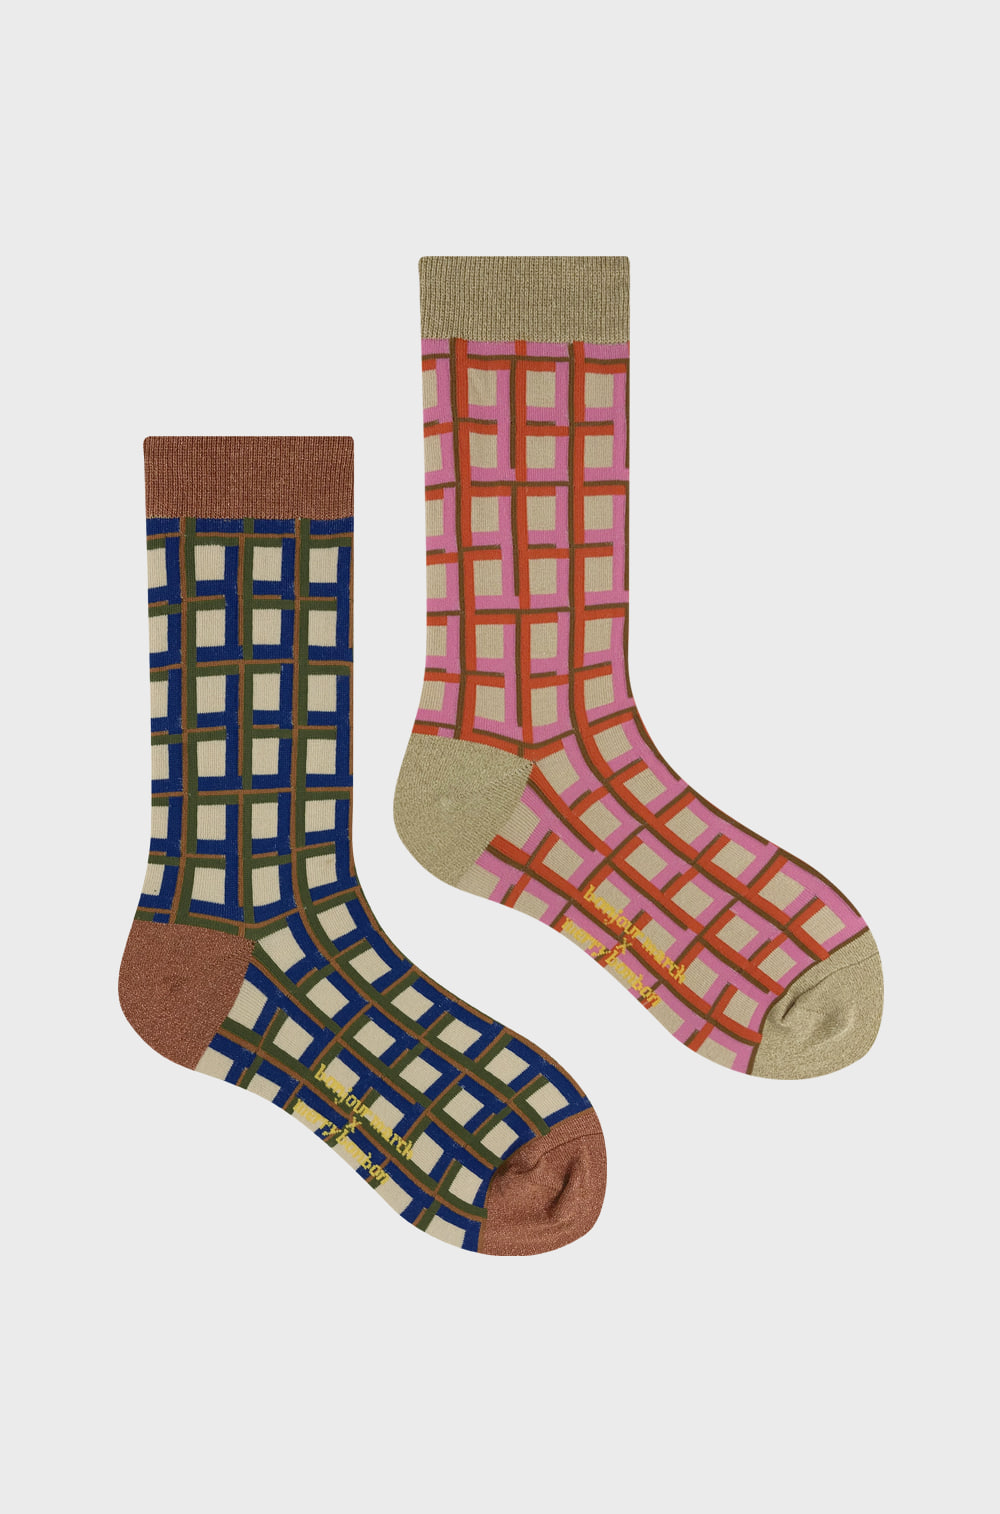 Bonjourmarch x merrybonbon socks_tarte socks